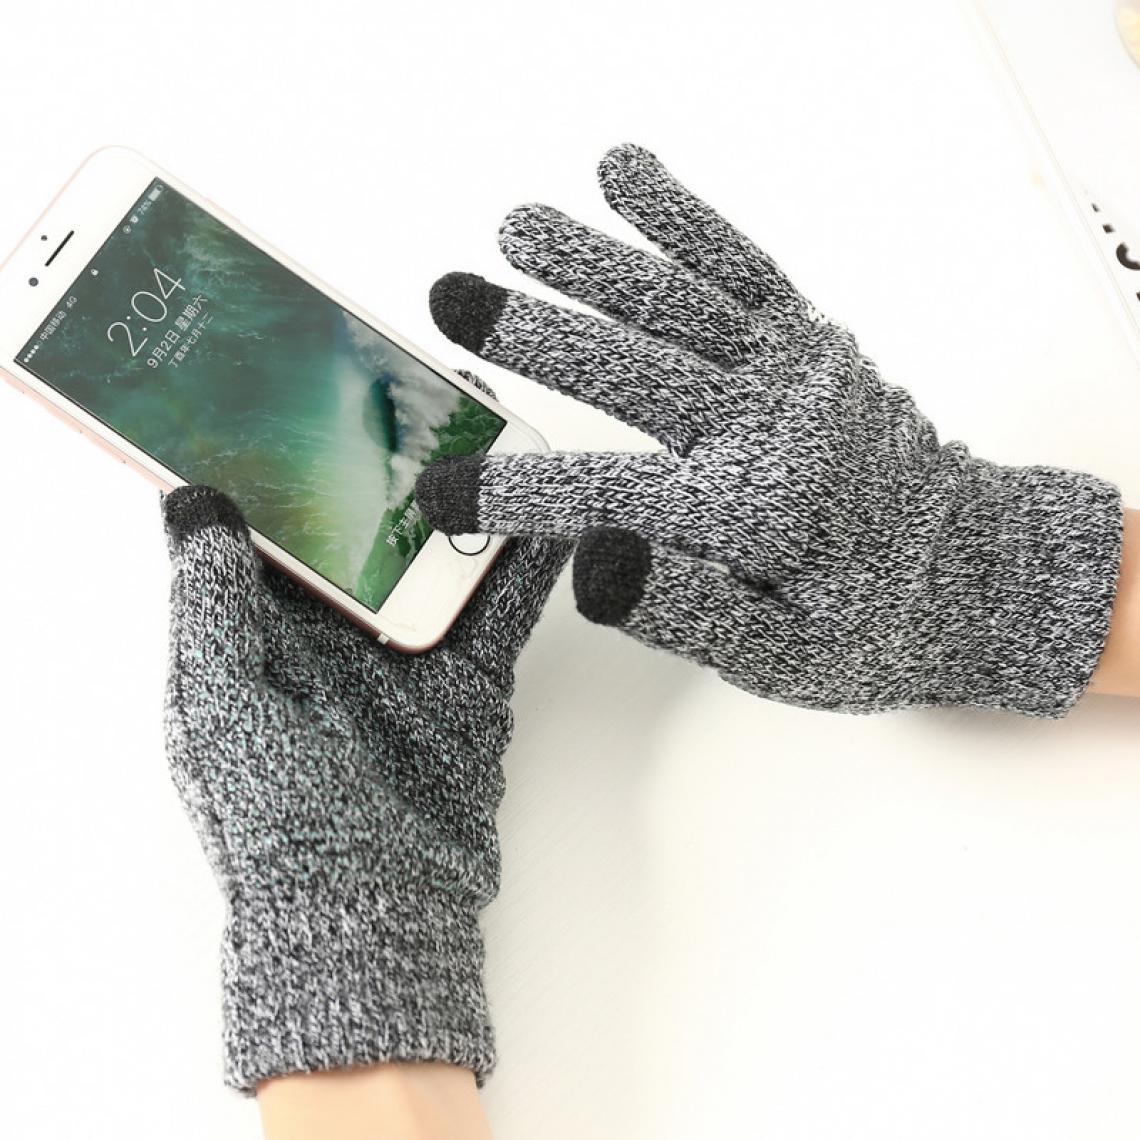 Shot - Gants Homme tactiles pour ASUS ROG Phone II Smartphone Taille M 3 doigts Hiver (NOIR) - Autres accessoires smartphone